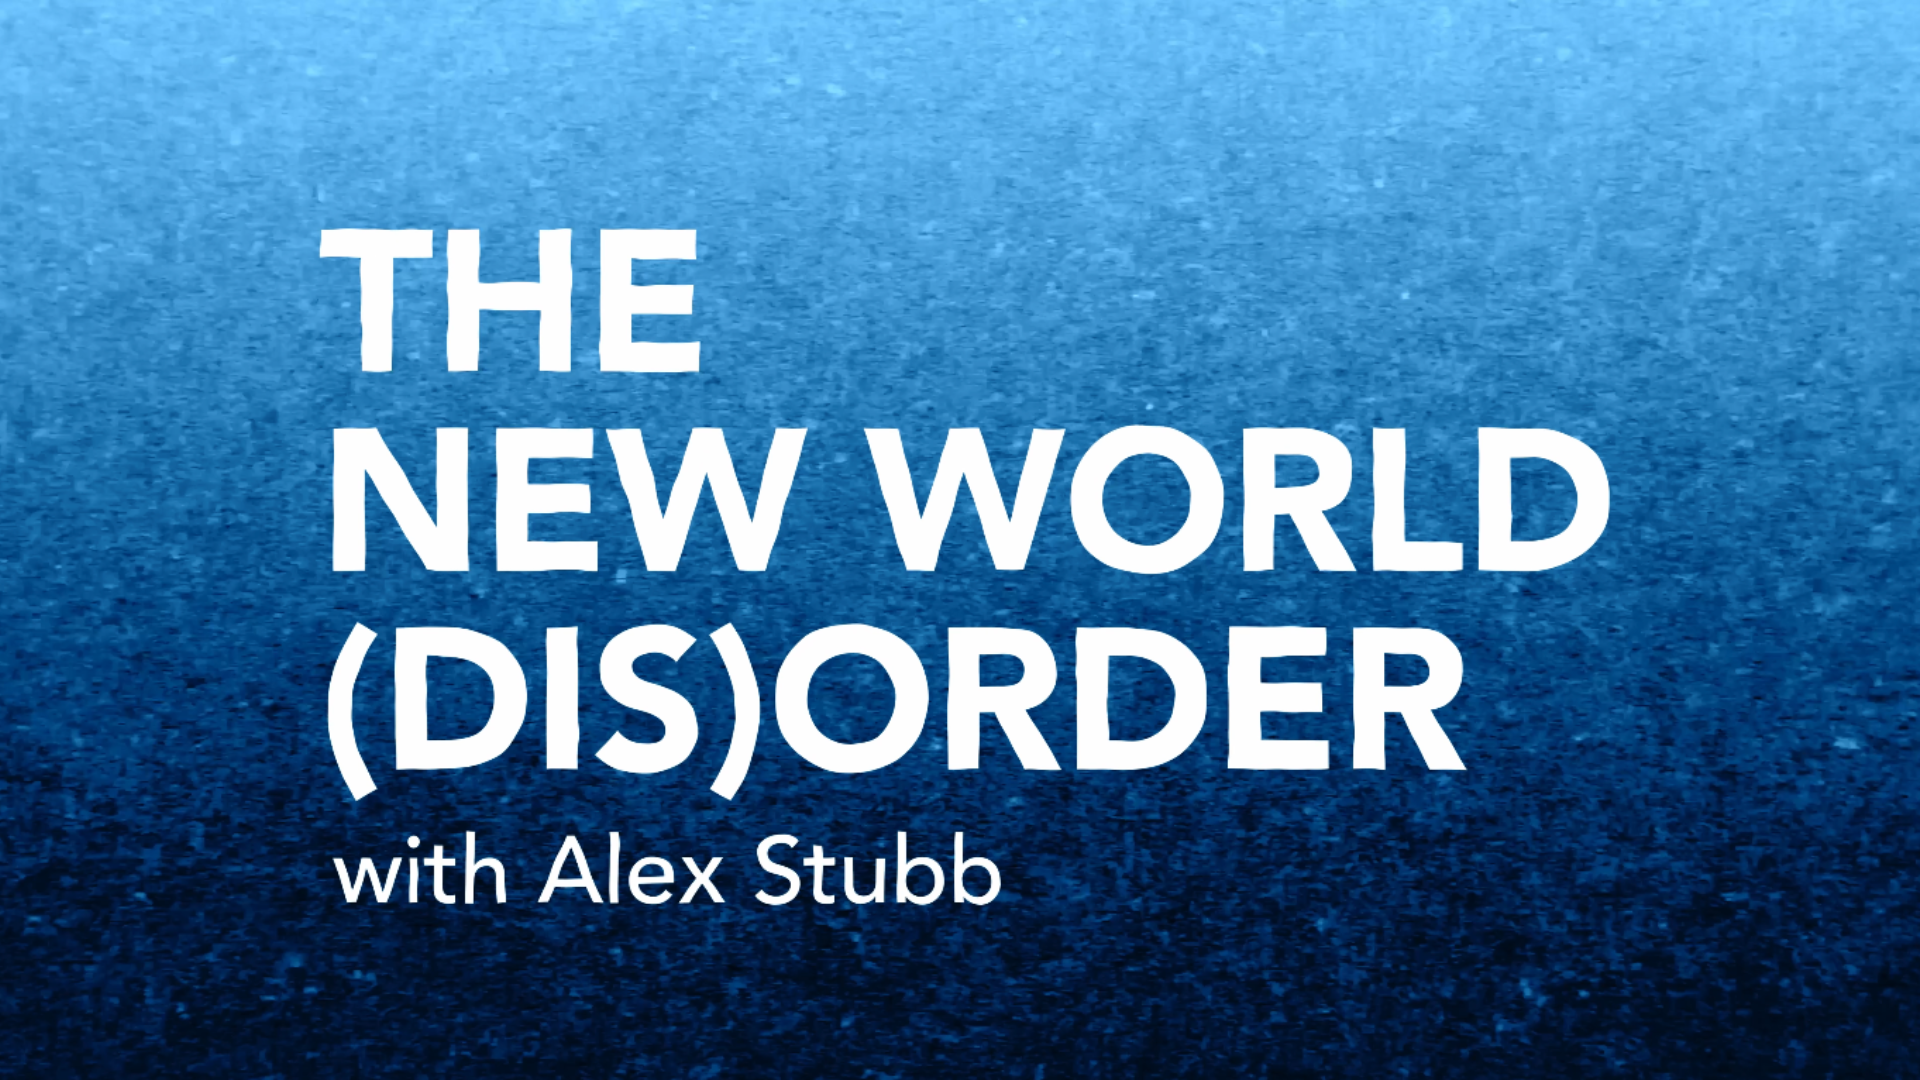 STG_world disorder_news